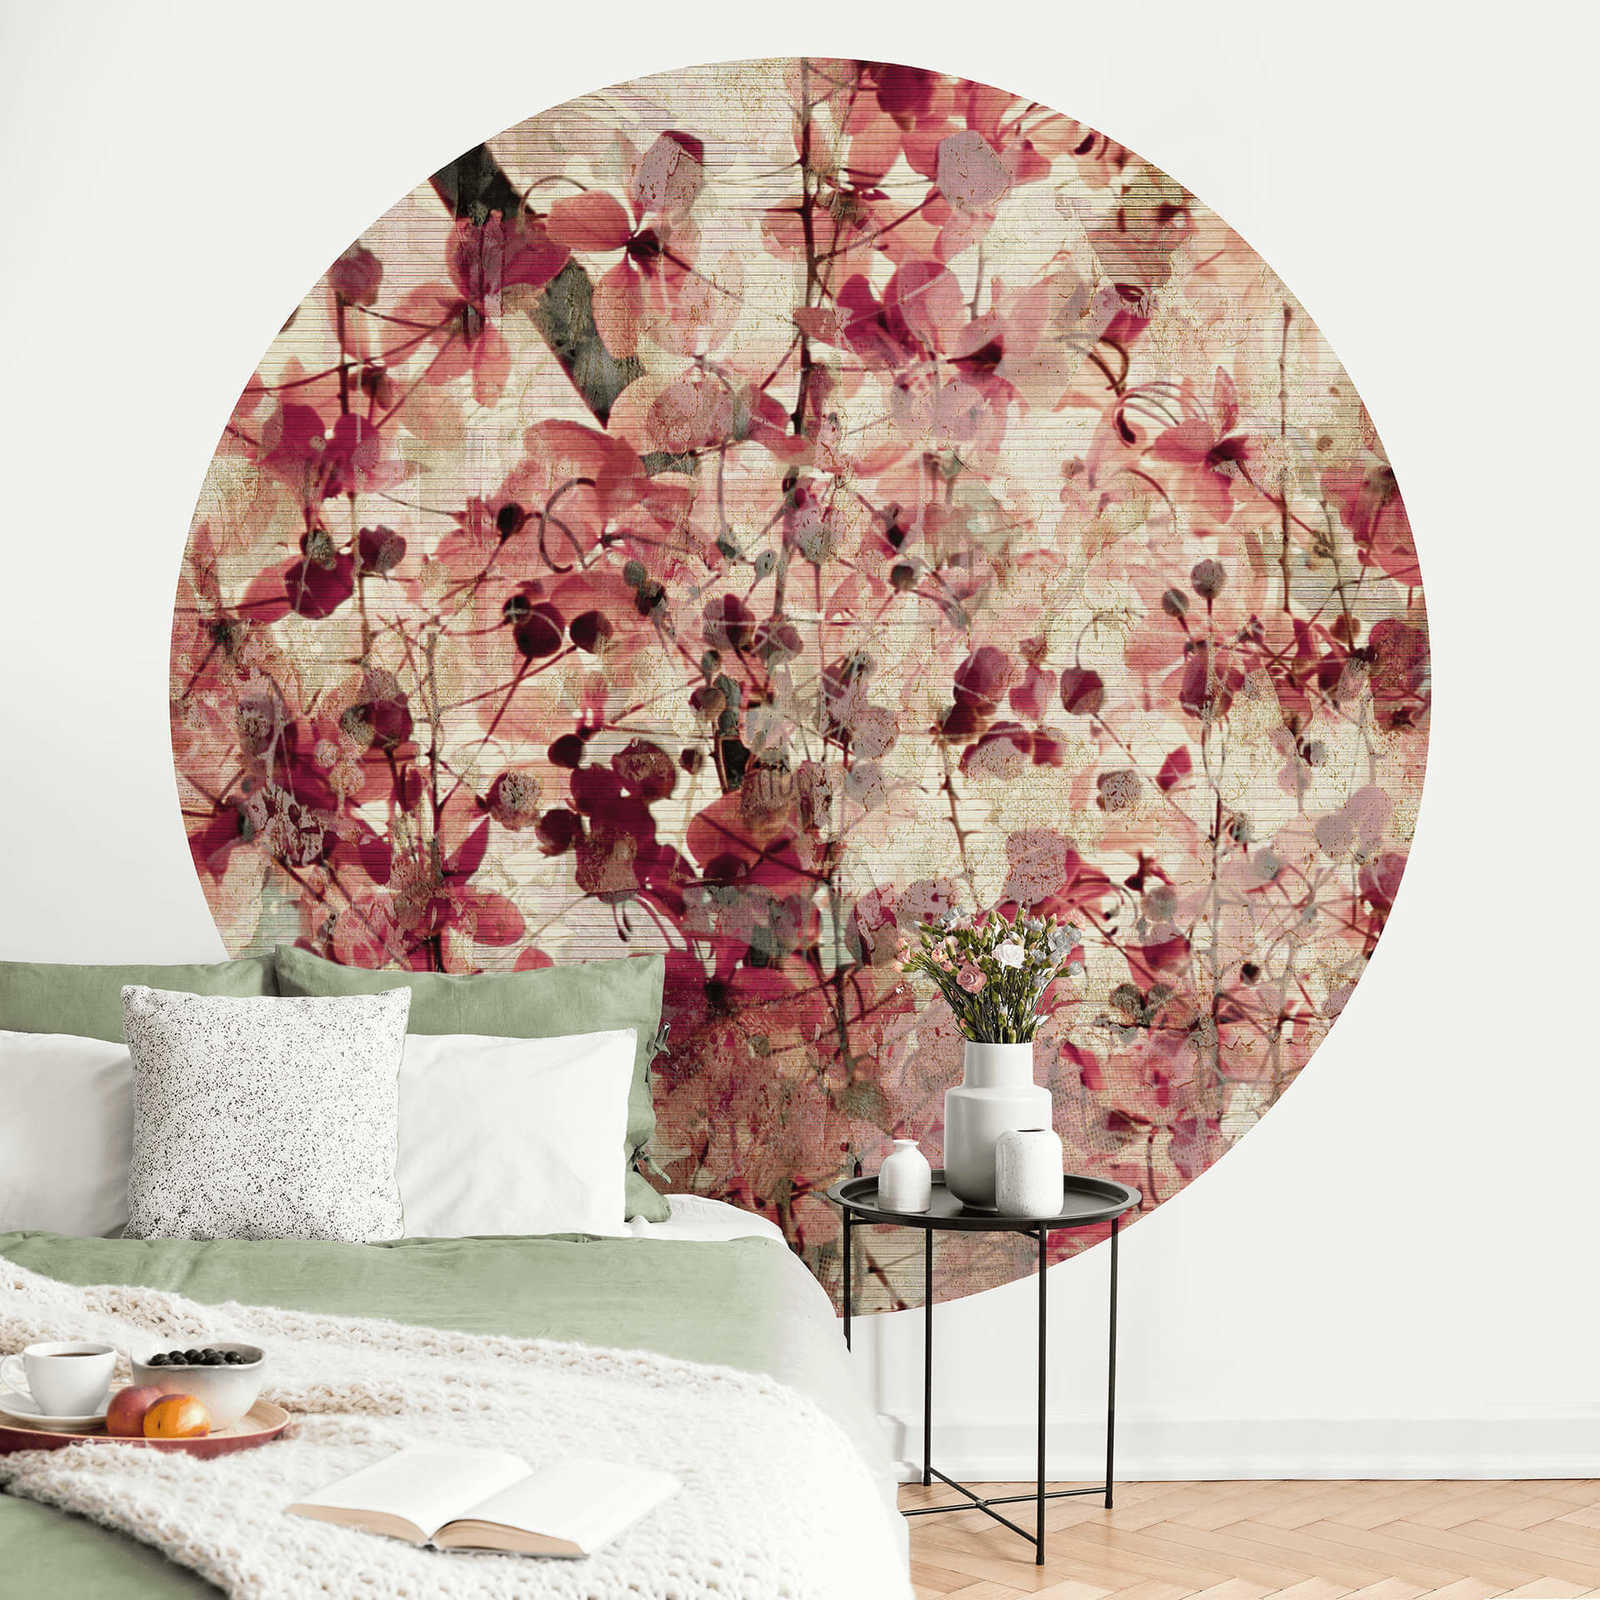             Papel pintado con motivos florales redondos de estilo vintage
        